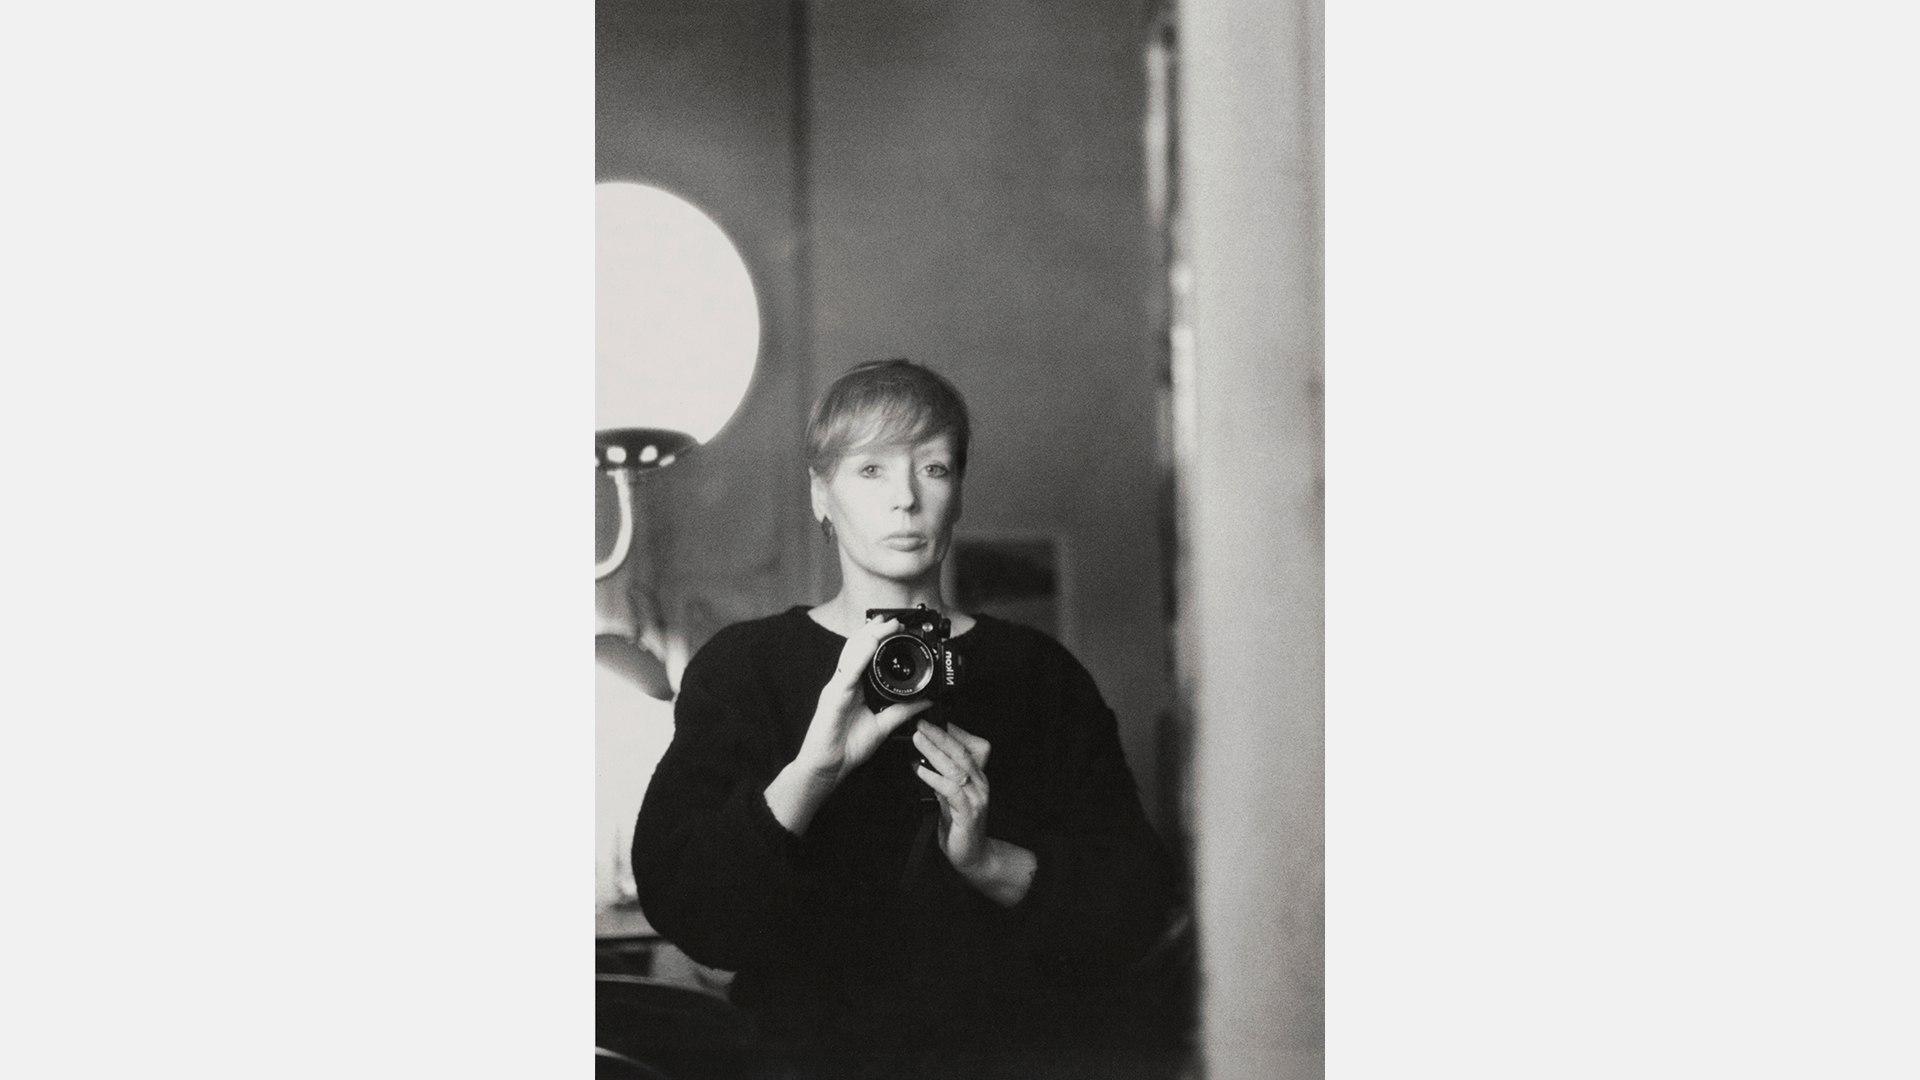 Sibylle Bergemann, Selbstporträt aus dem Jahr 1986 | Estate Sibylle Bergemann/OSTKREUZ. Courtesy Loock Galerie, Berlin